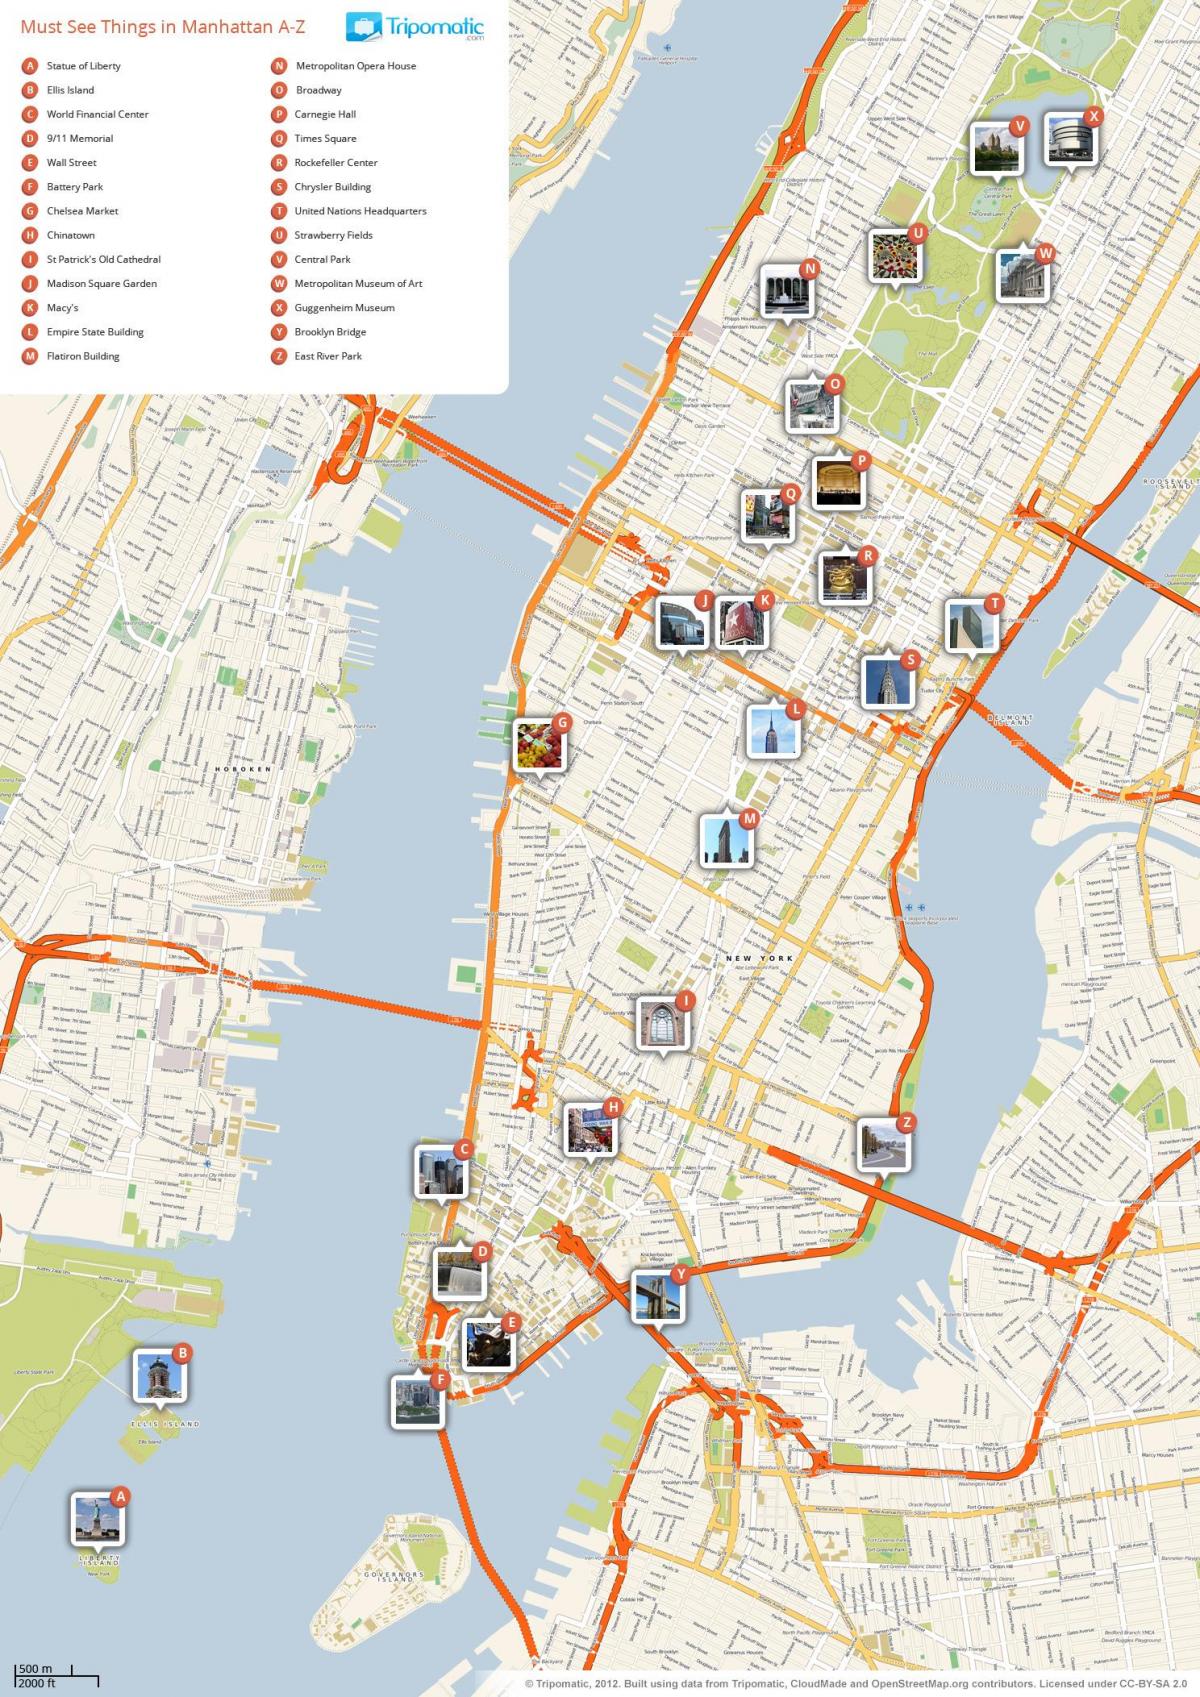 mappa di Manhattan mostrando attrazioni turistiche